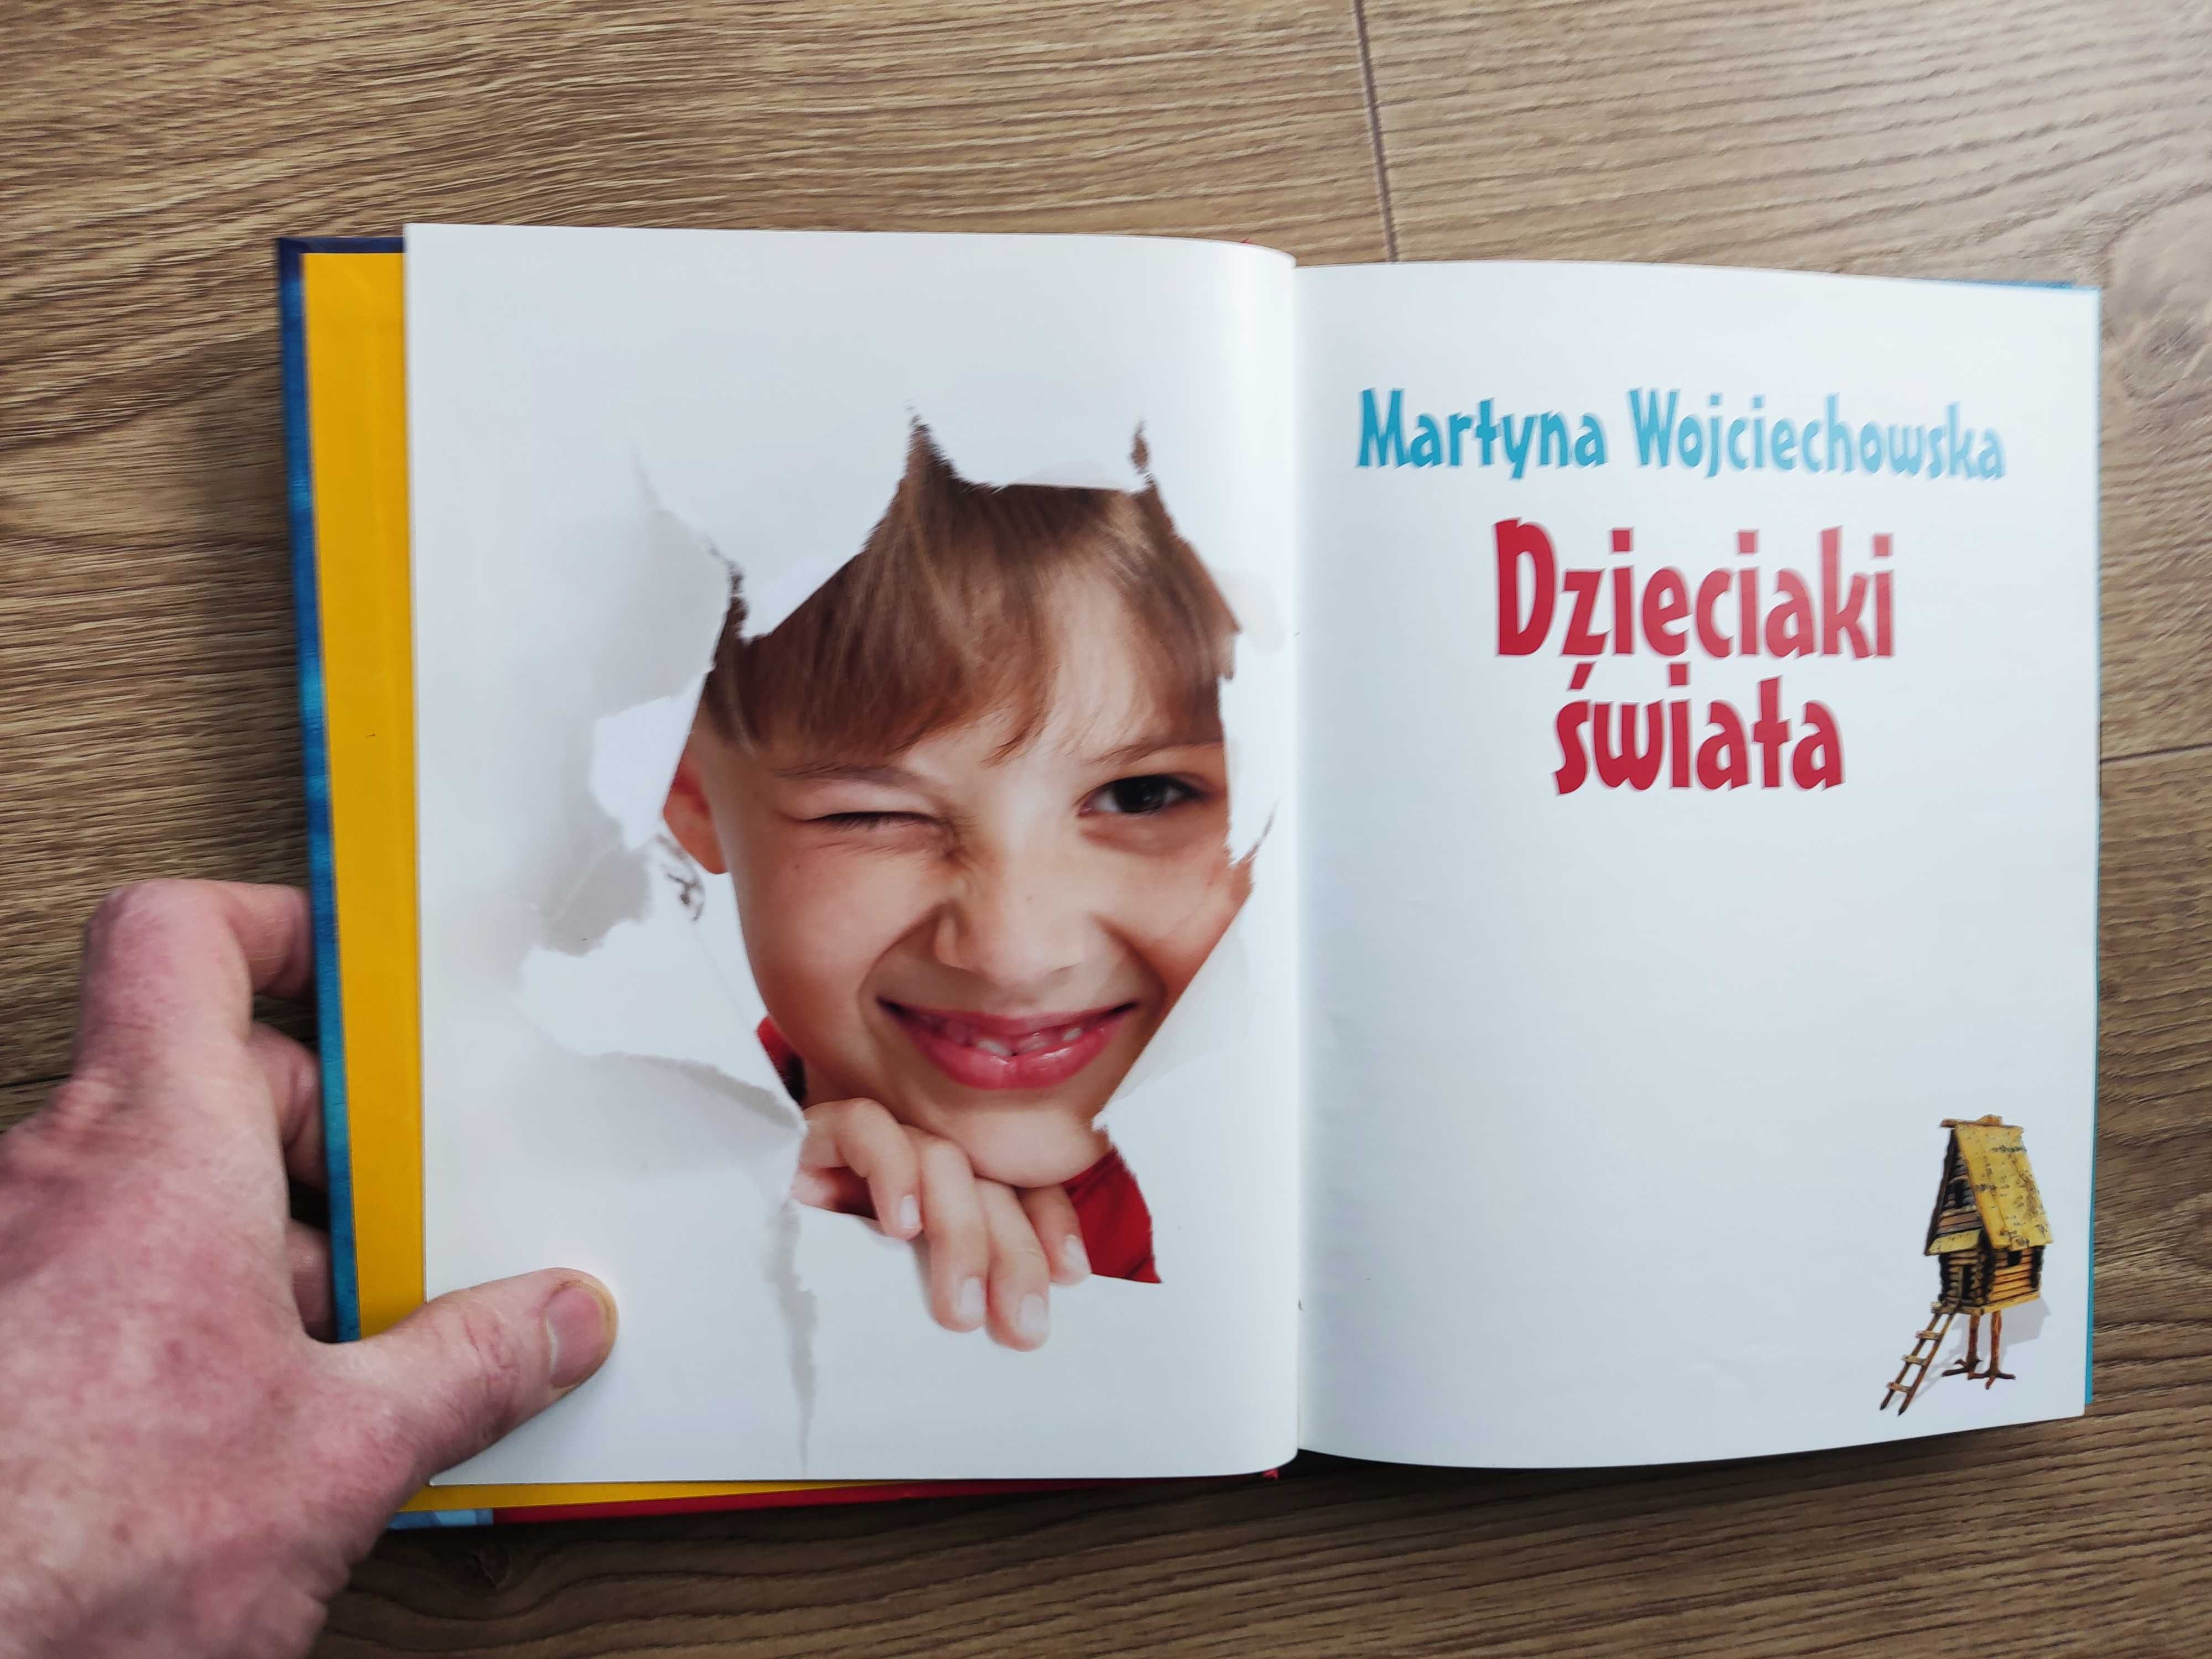 Sprzedam książkę: Dzieciaki Świata autor: Martyna Wojciechowska